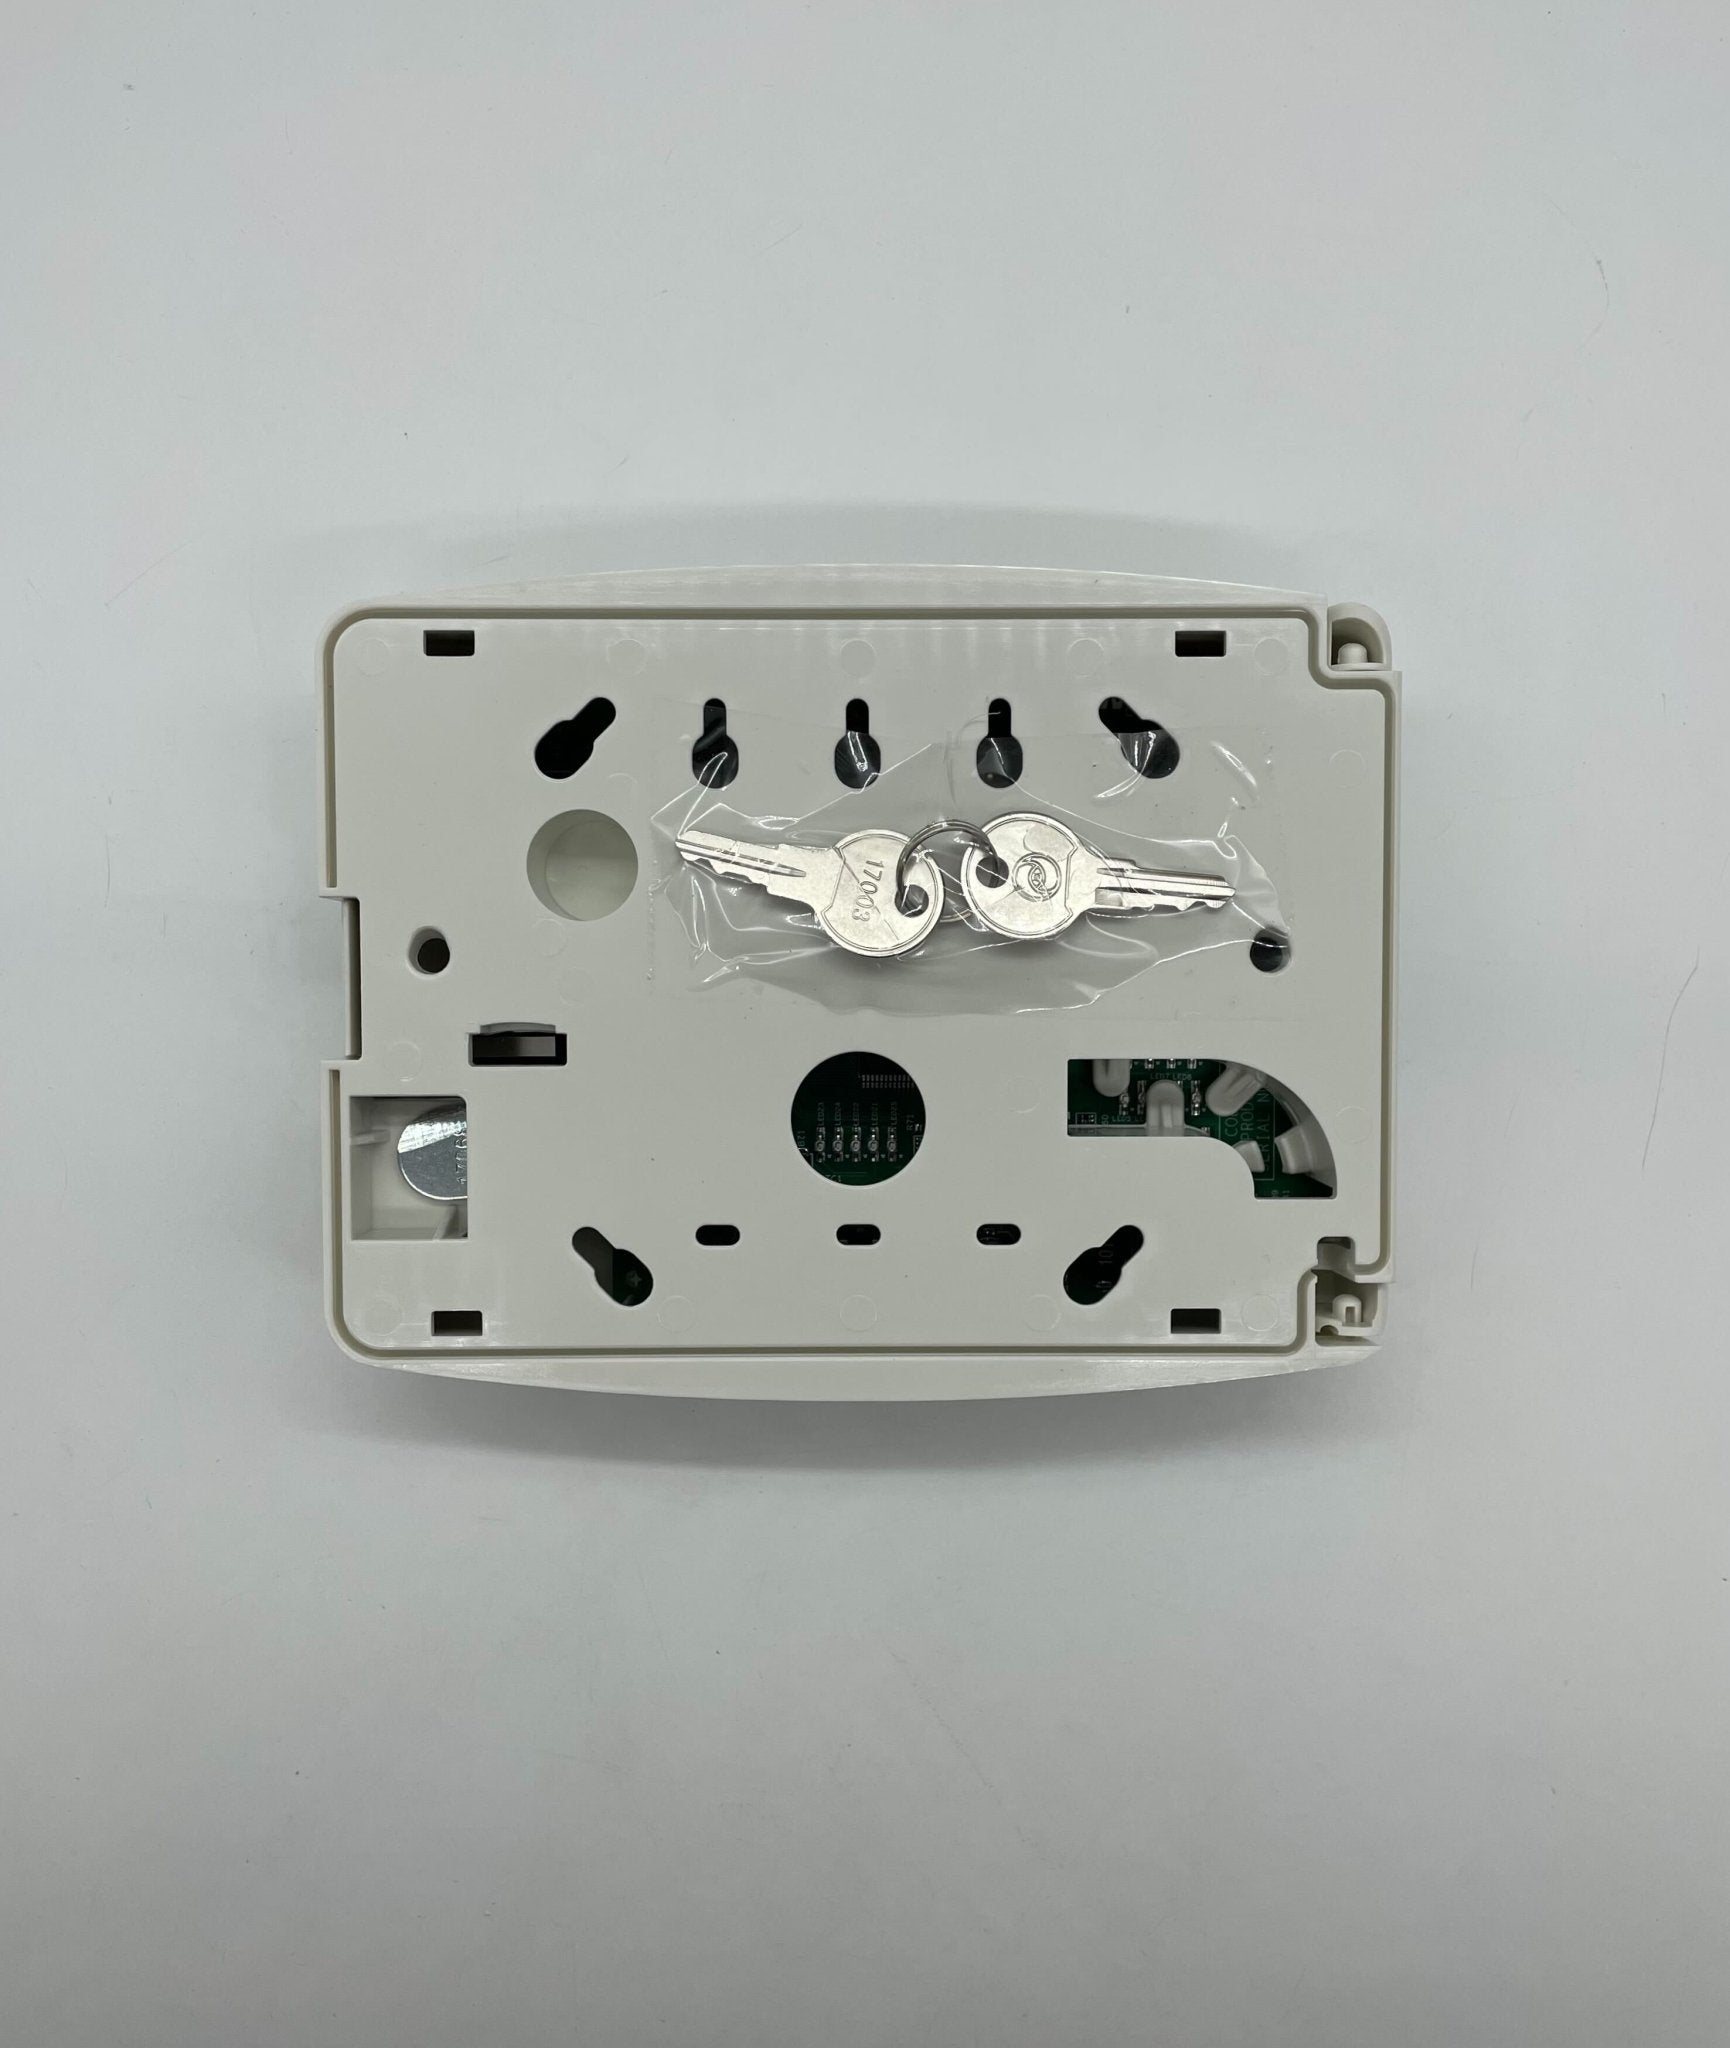 Firelite ANN-80-W - The Fire Alarm Supplier